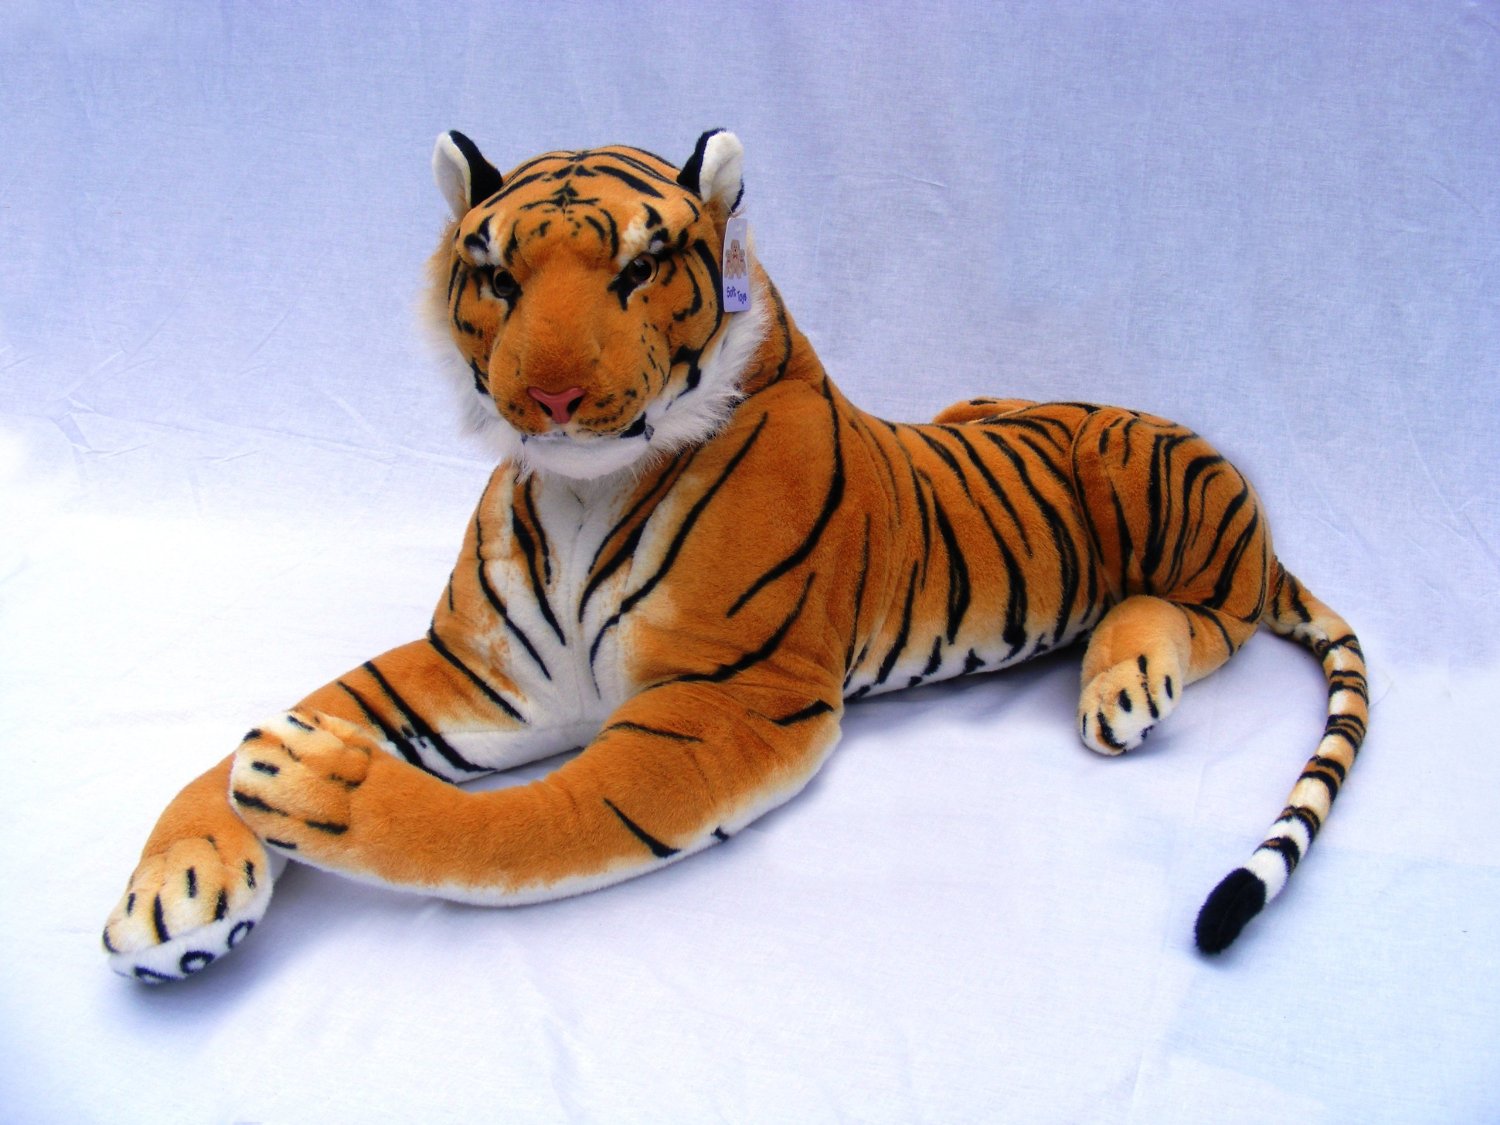 Giant Stuffed Tiger Animal Big Orange Tiger Plush Large 45\